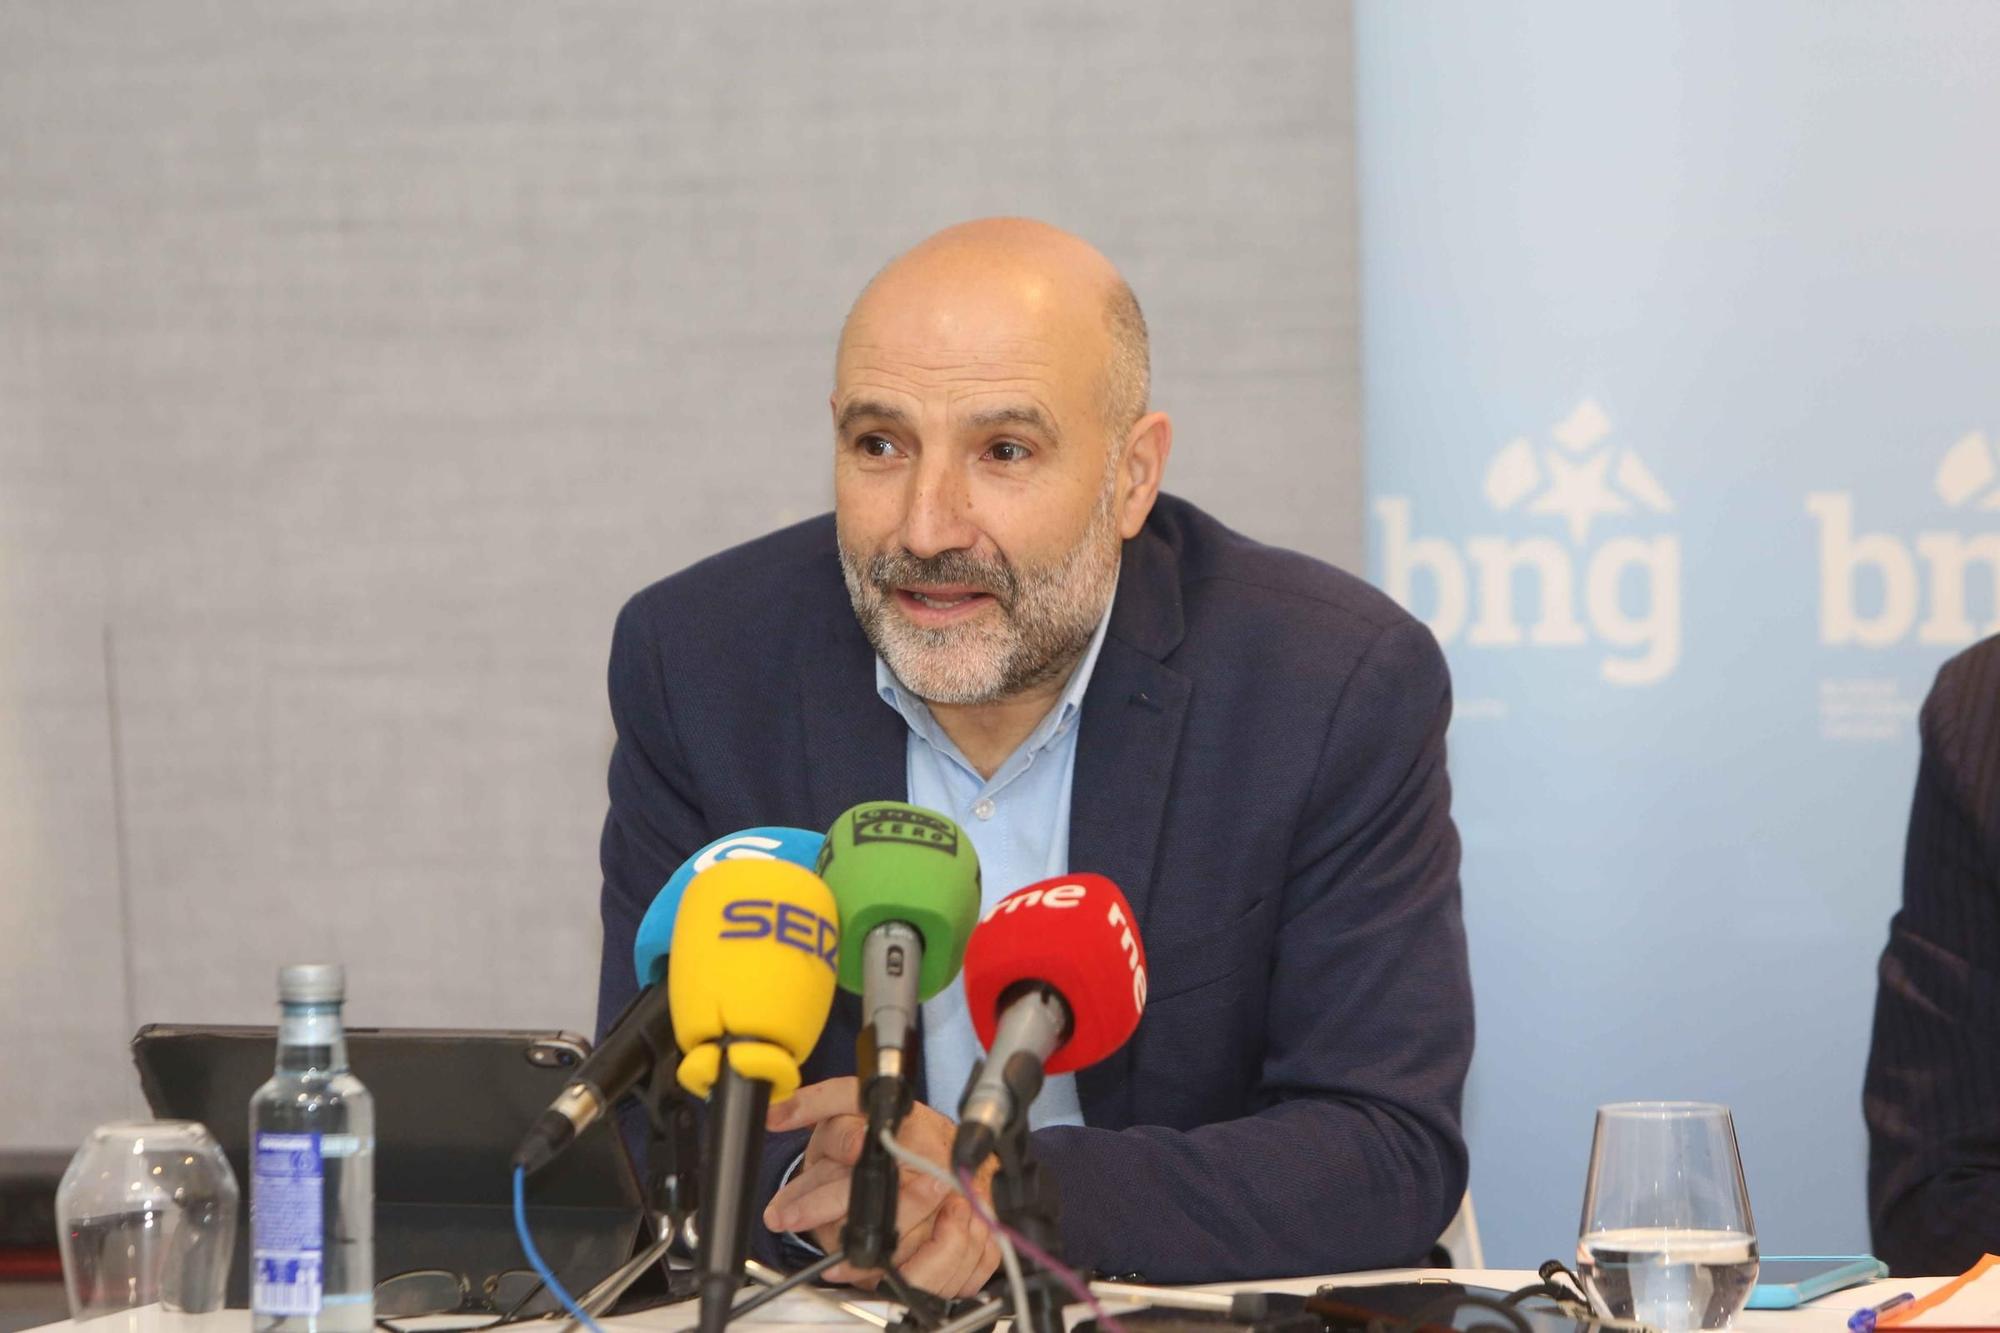 El BNG expone en A Coruña los detalles del pacto con el PSOE para la investidura de Pedro Sánchez